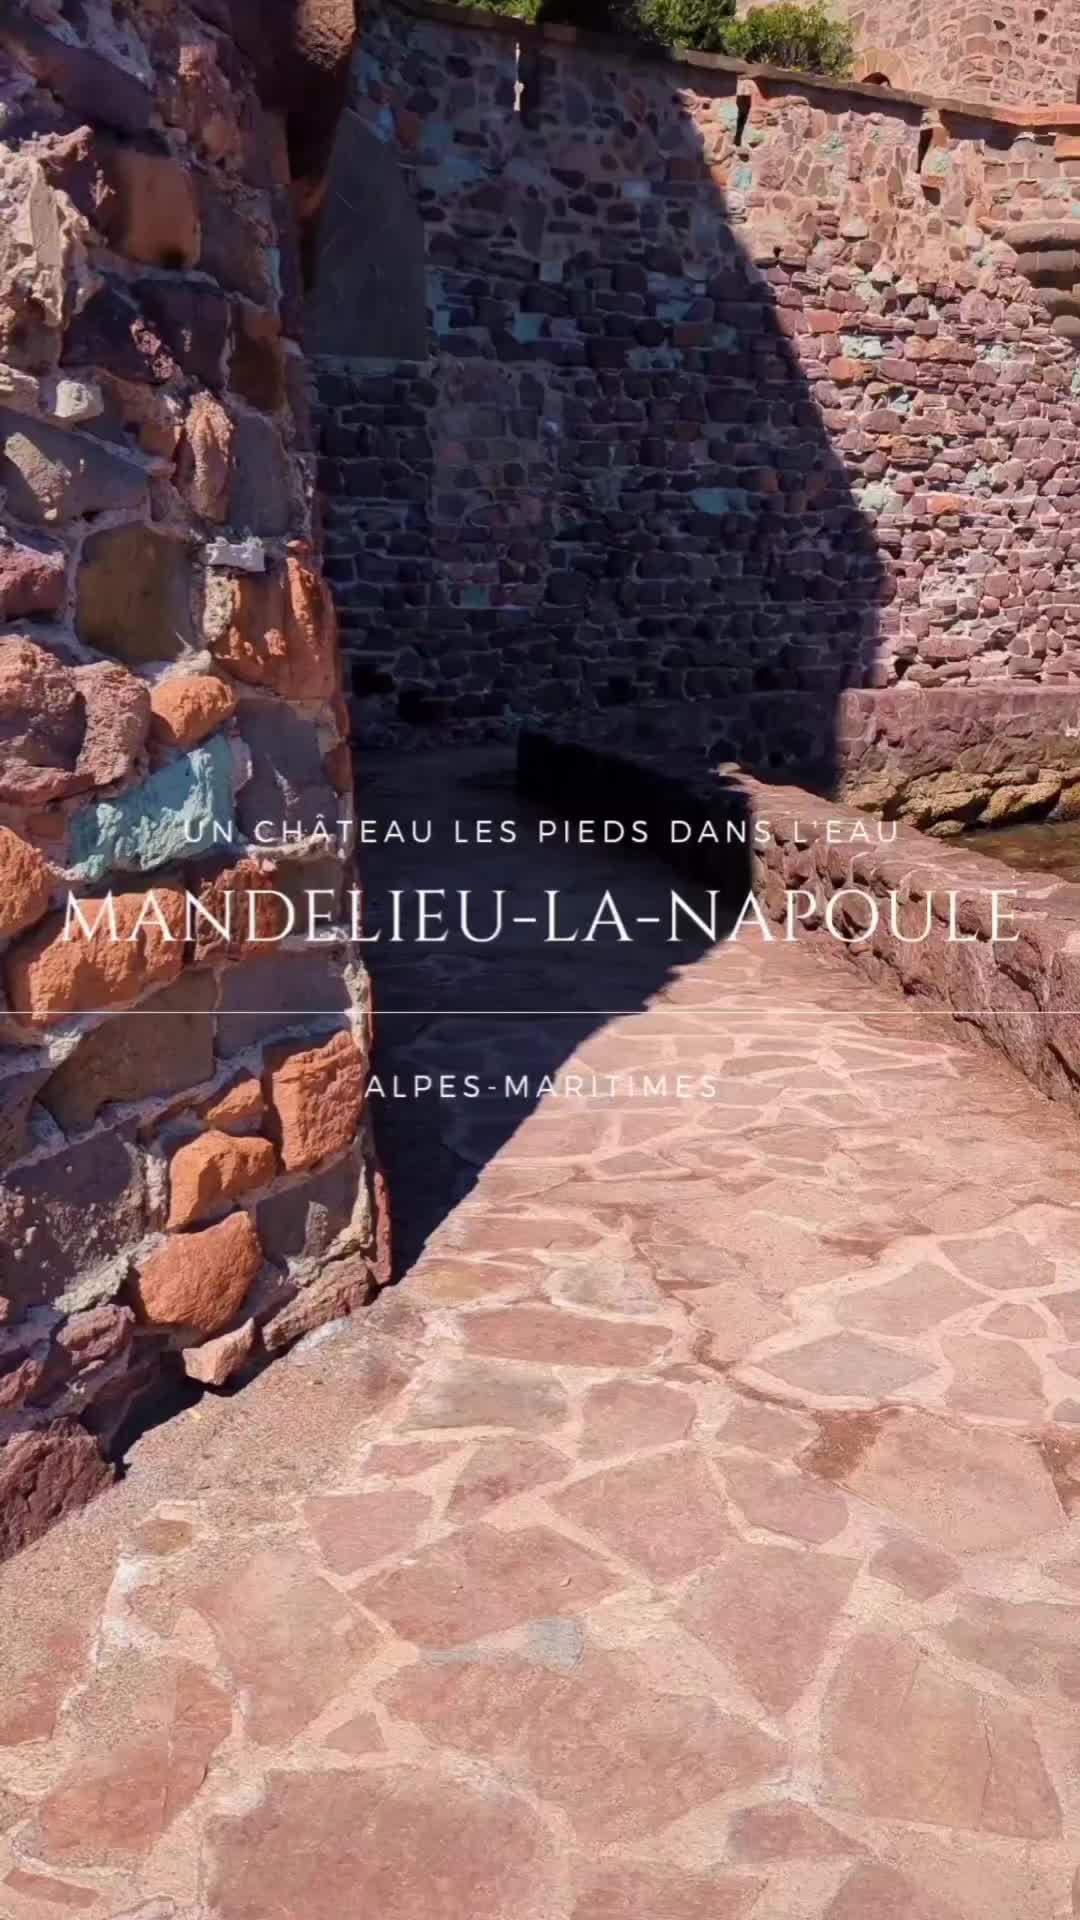 Discover Château de Mandelieu la Napoule's Magic